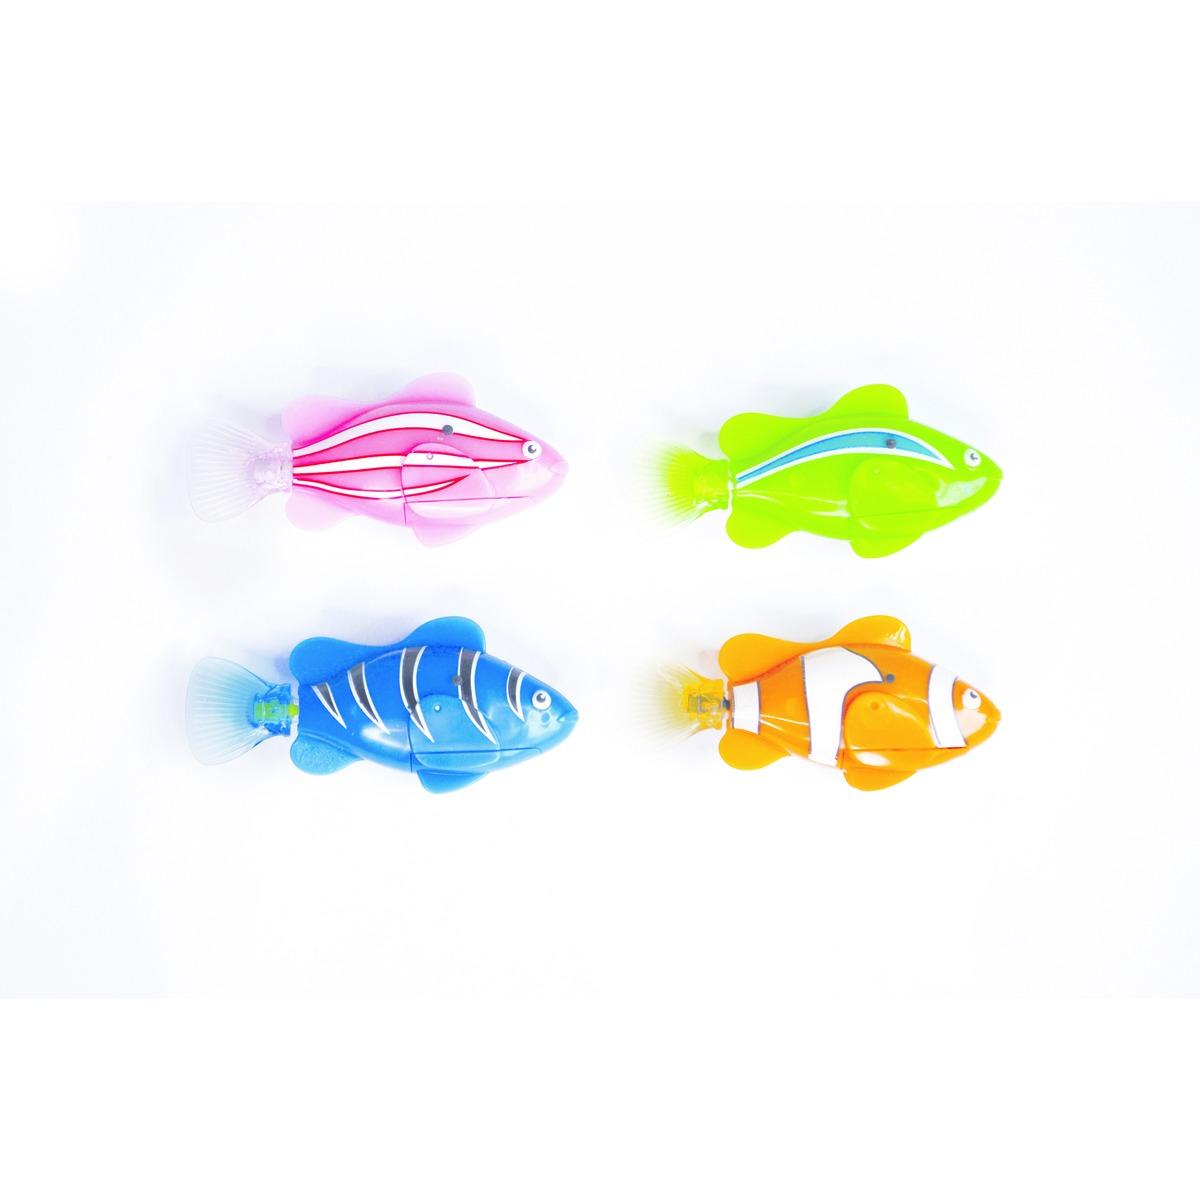 Poisson Colorfish - 8 x 4 x h 2 cm - Différents coloris